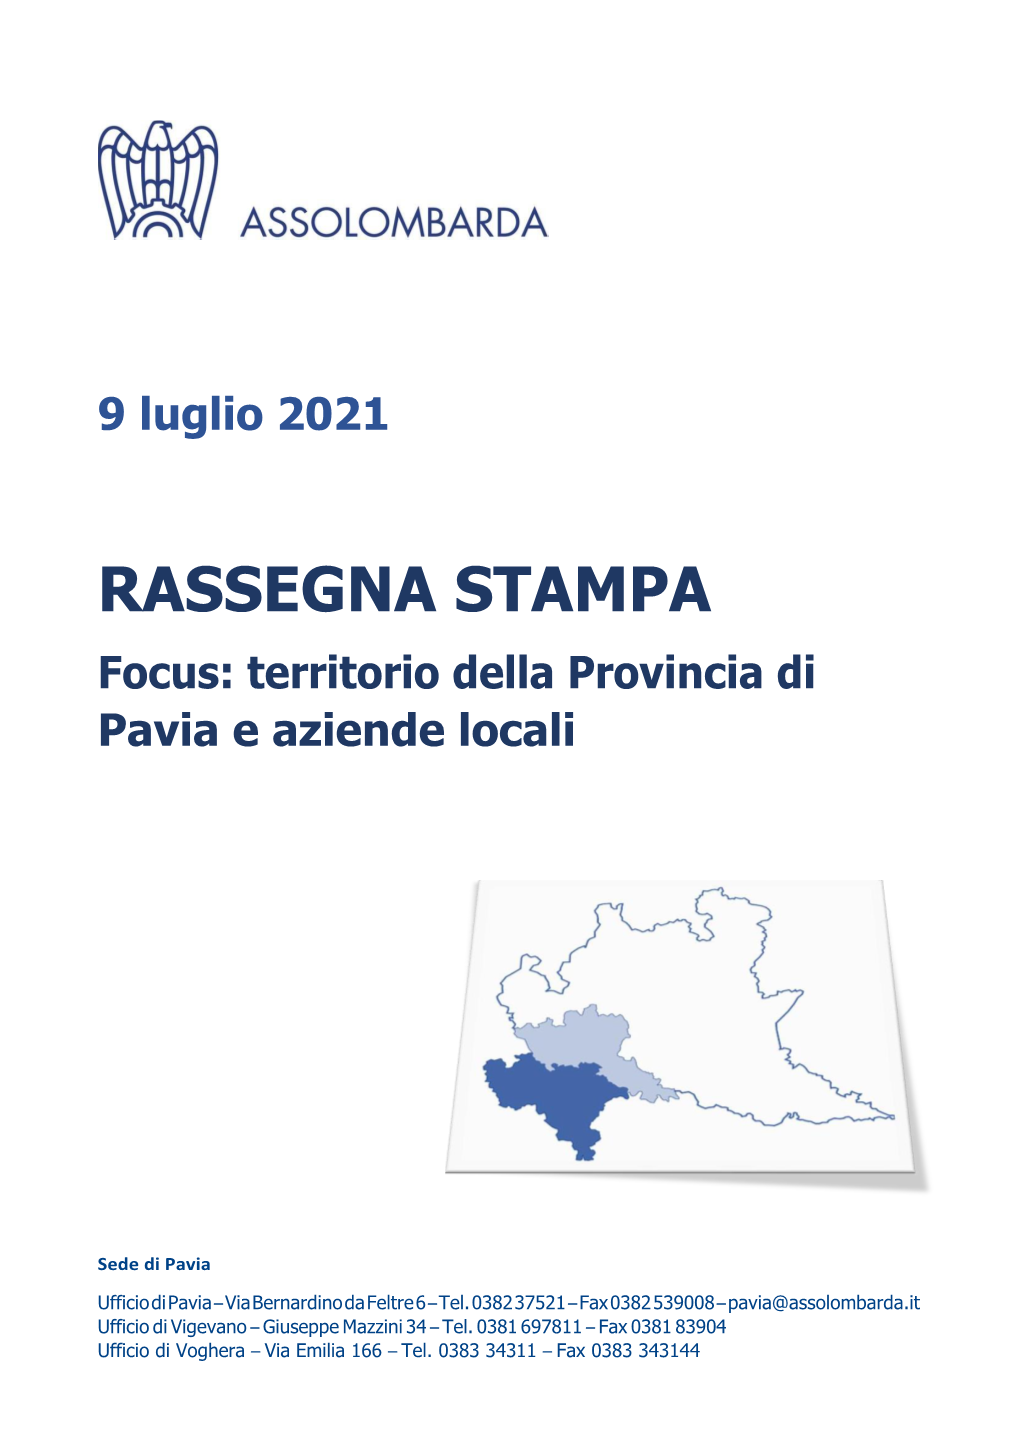 RASSEGNA STAMPA Focus: Territorio Della Provincia Di Pavia E Aziende Locali